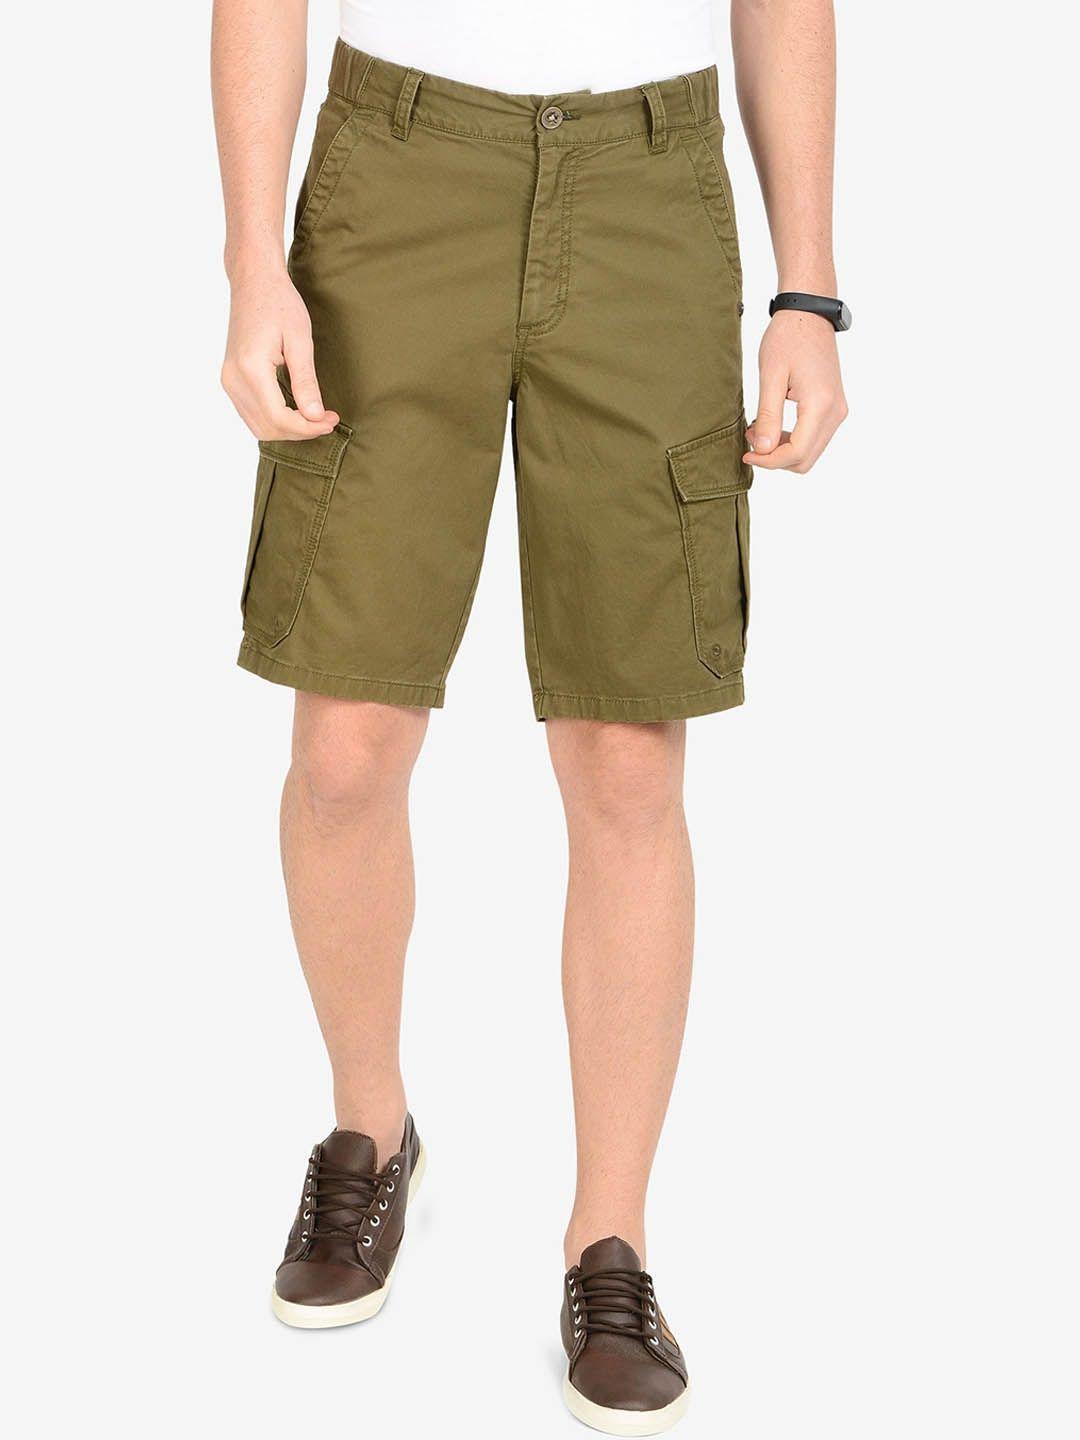 t-base-men-cotton-mid-rise-cargo-shorts